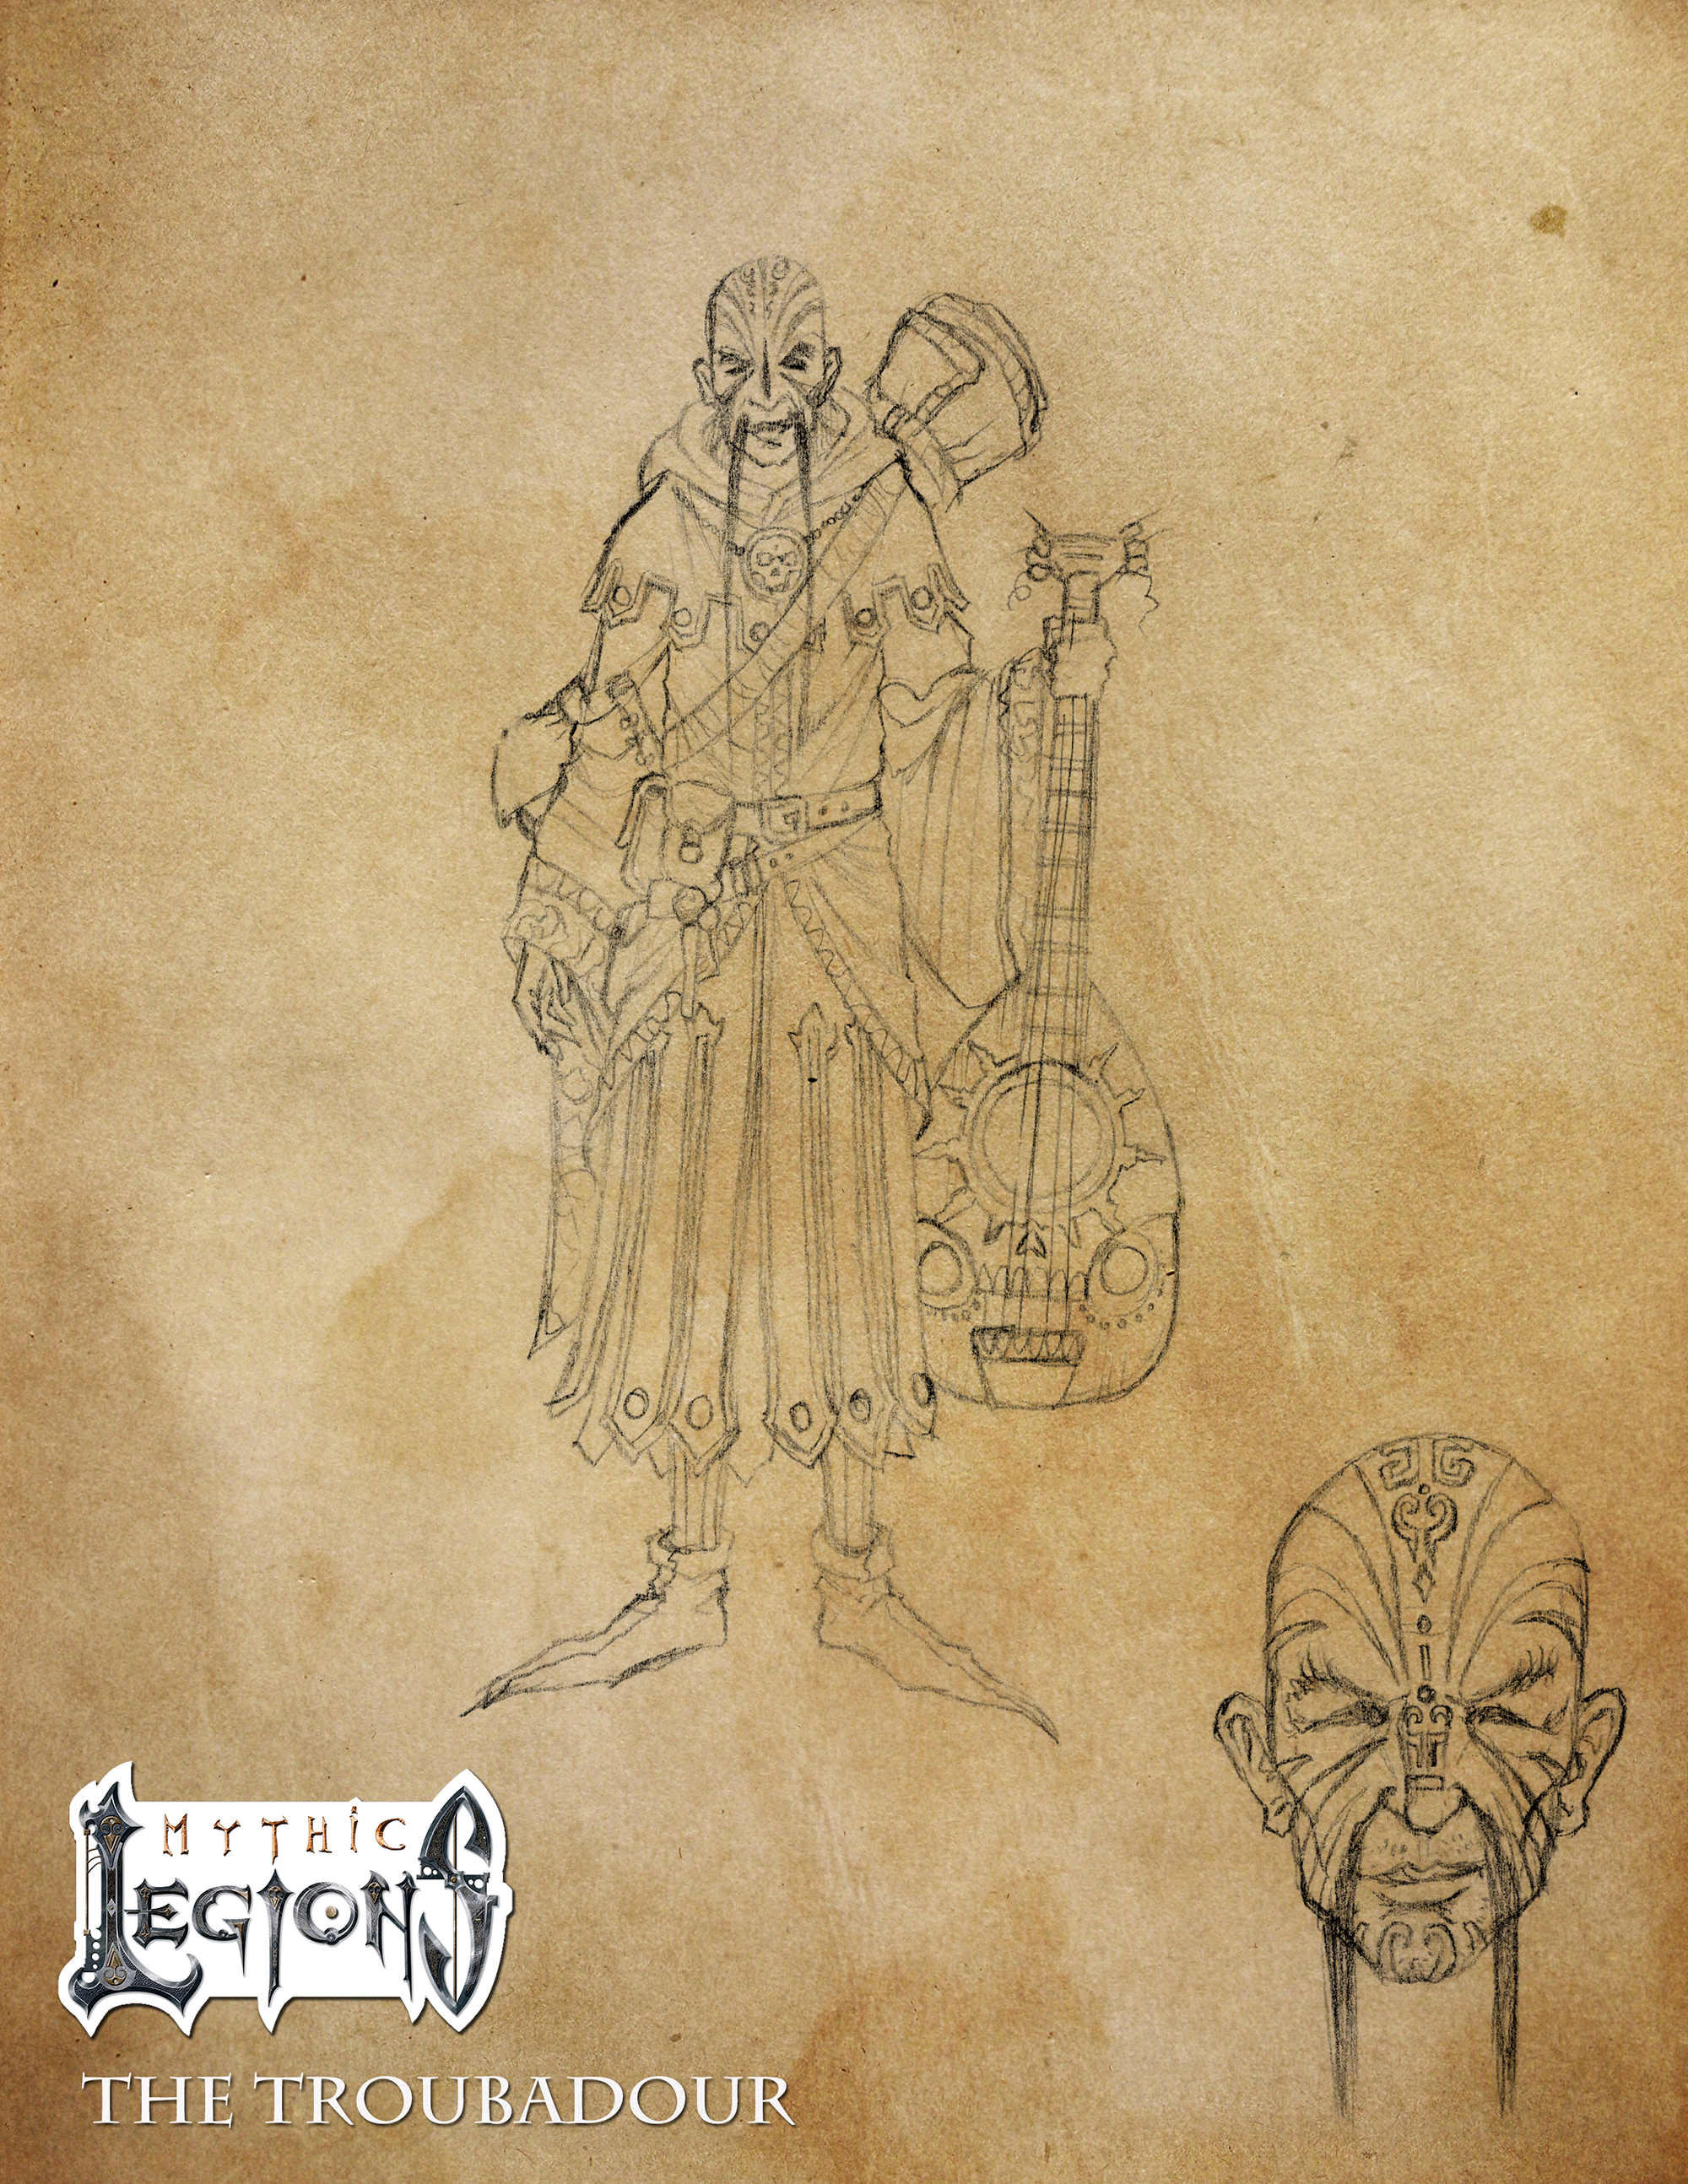 Mythic Legions sketches